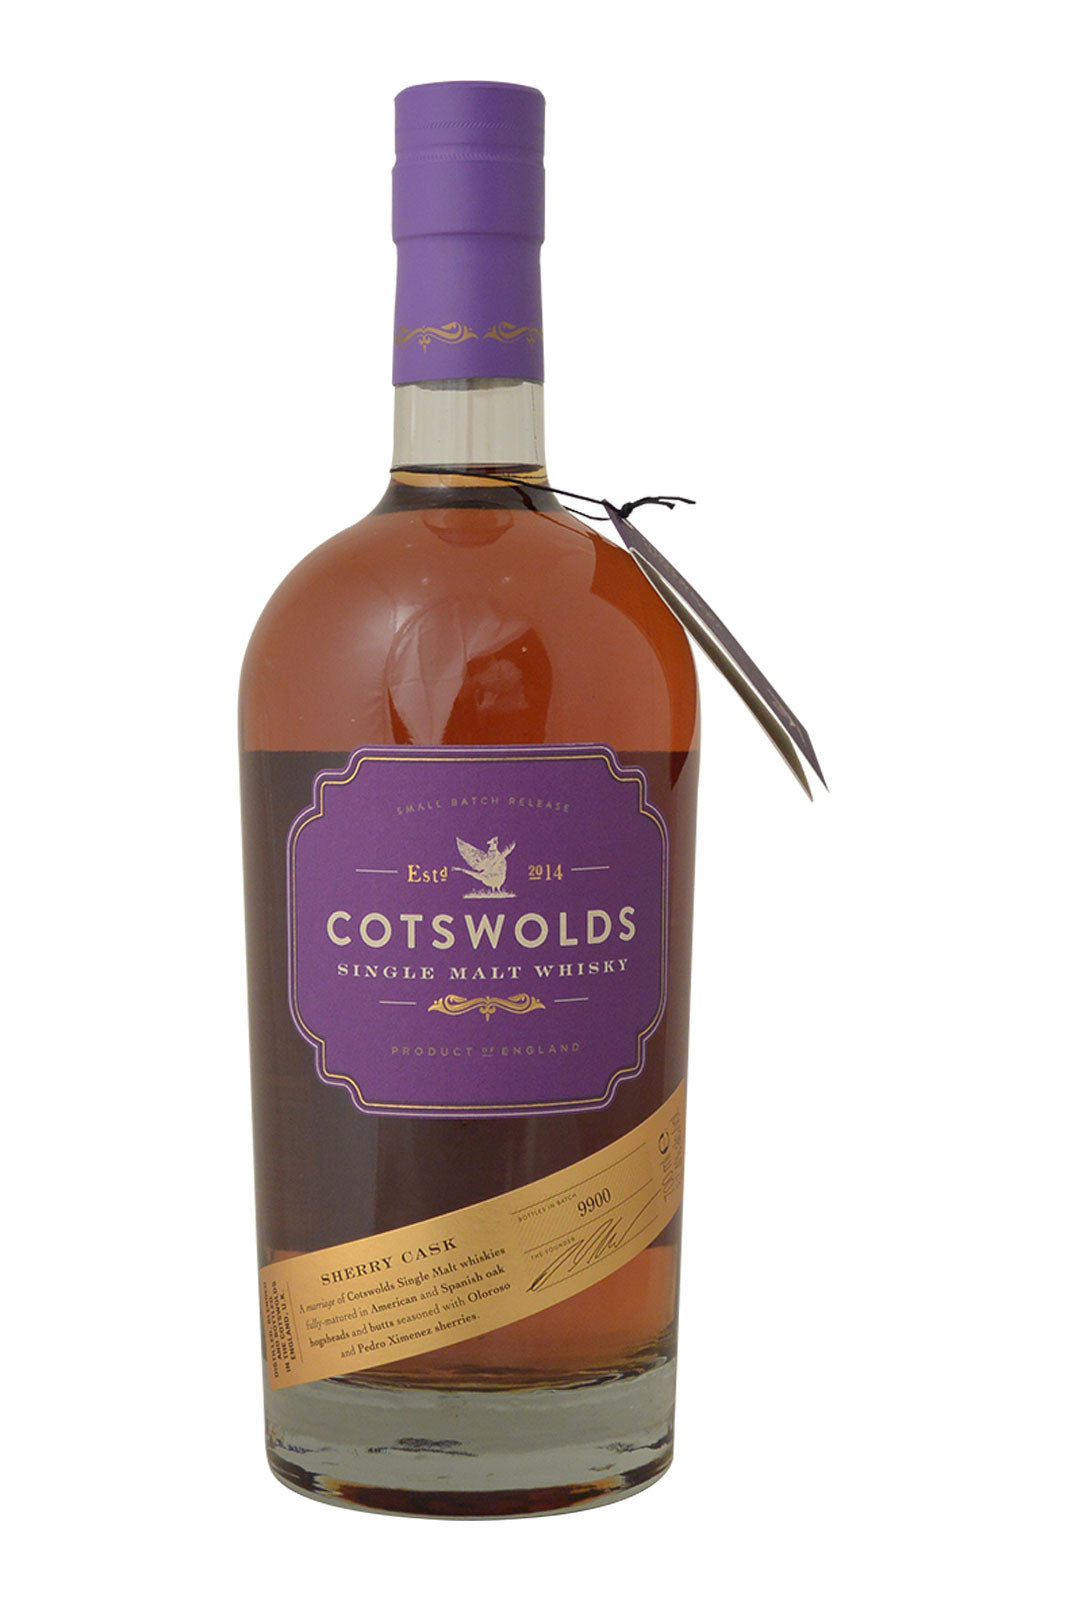 Cotswolds Sherry Cask Single Malt